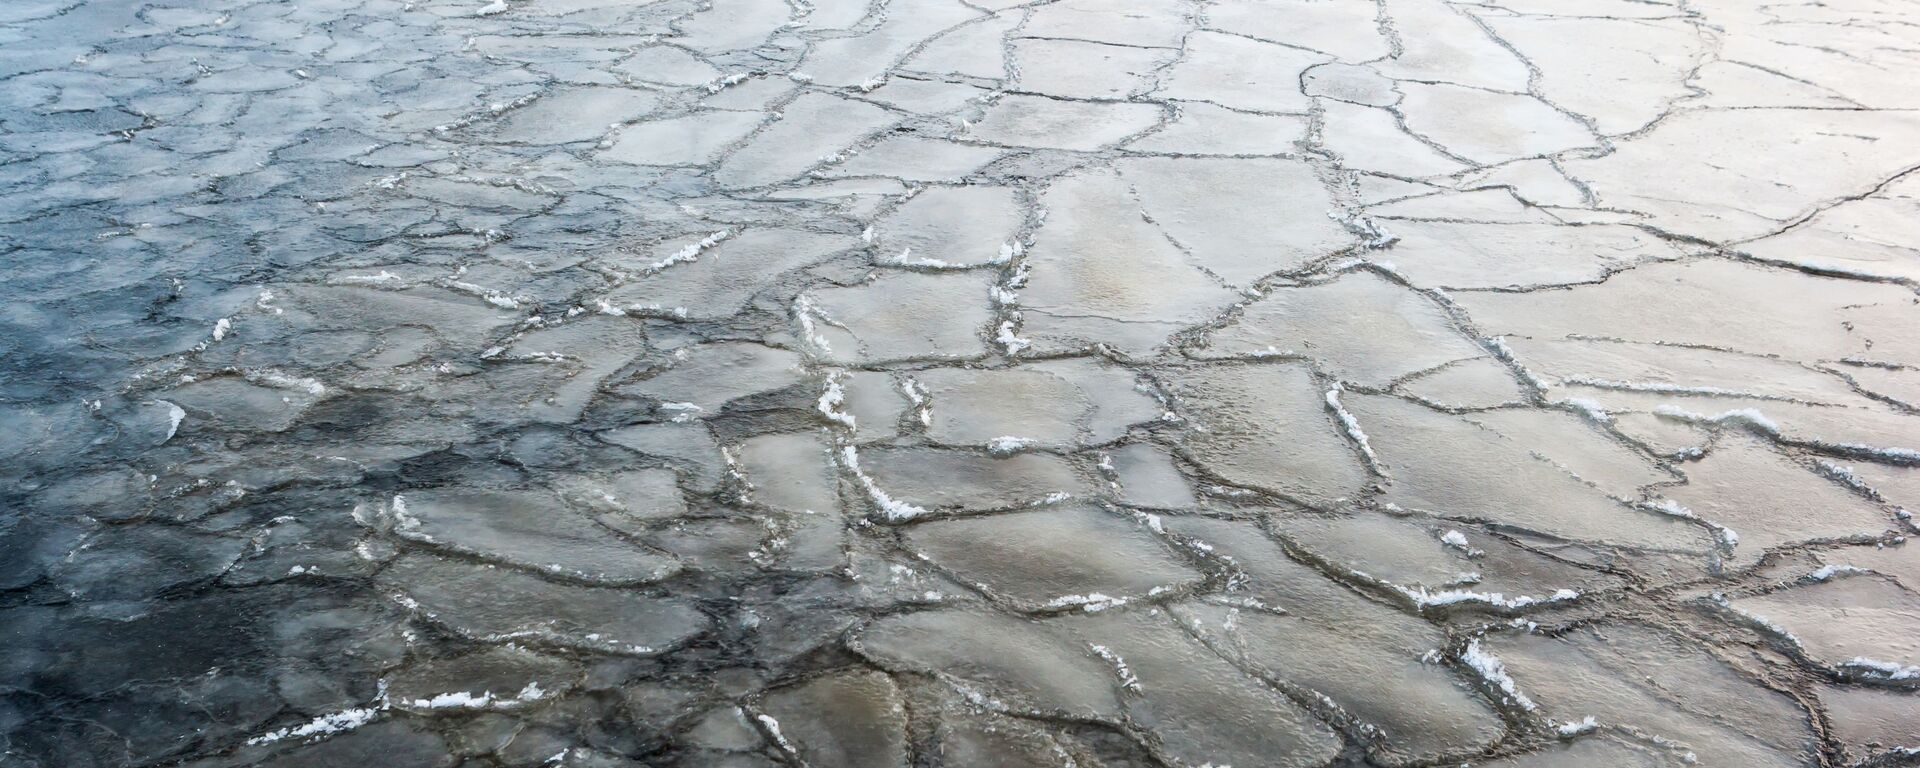 Лед на озере  - Sputnik Беларусь, 1920, 21.01.2021